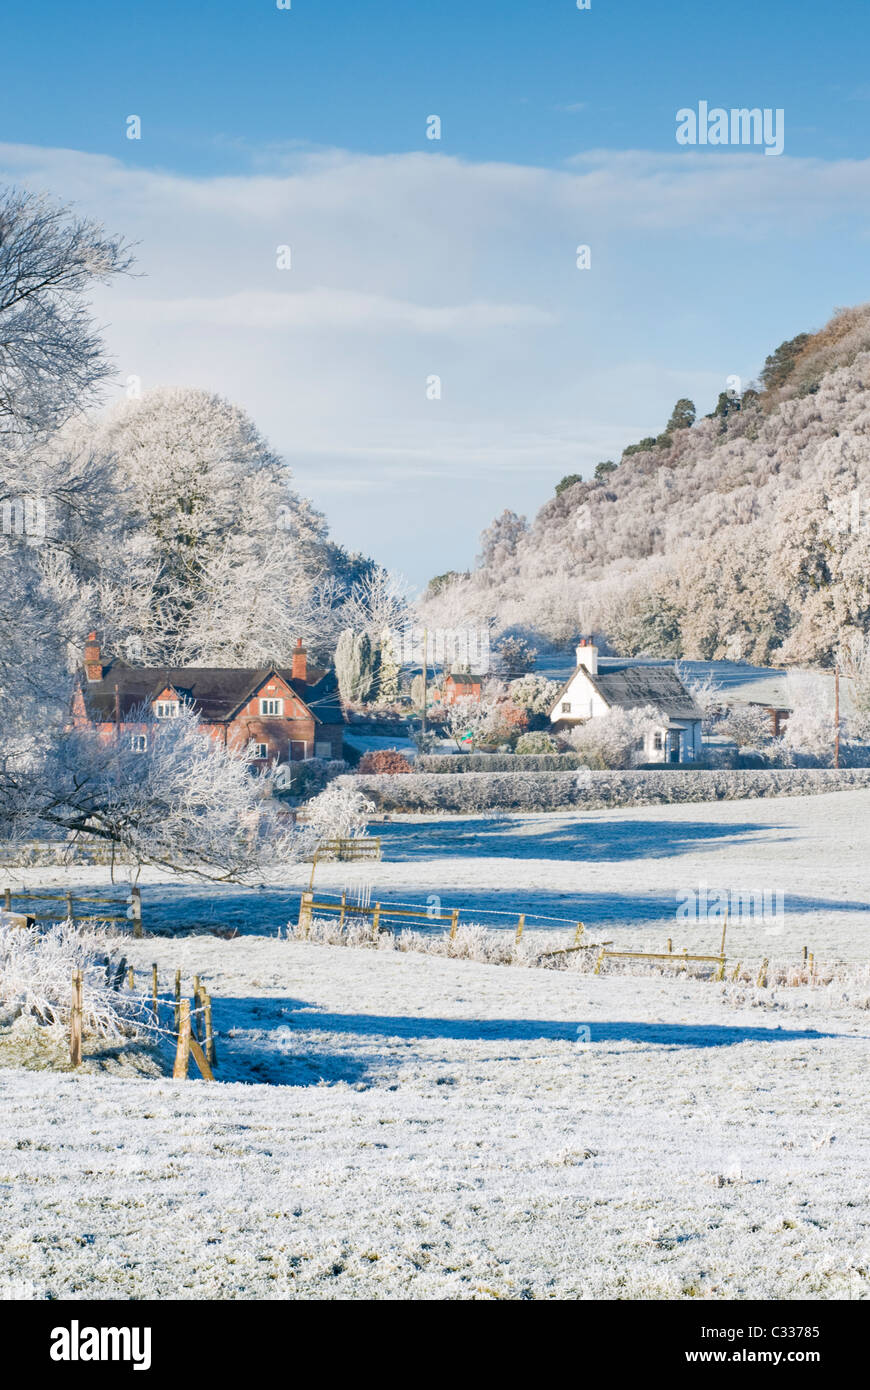 Cheshire attrayant cottages en hiver, près de Chester, Cheshire, Angleterre, RU Banque D'Images